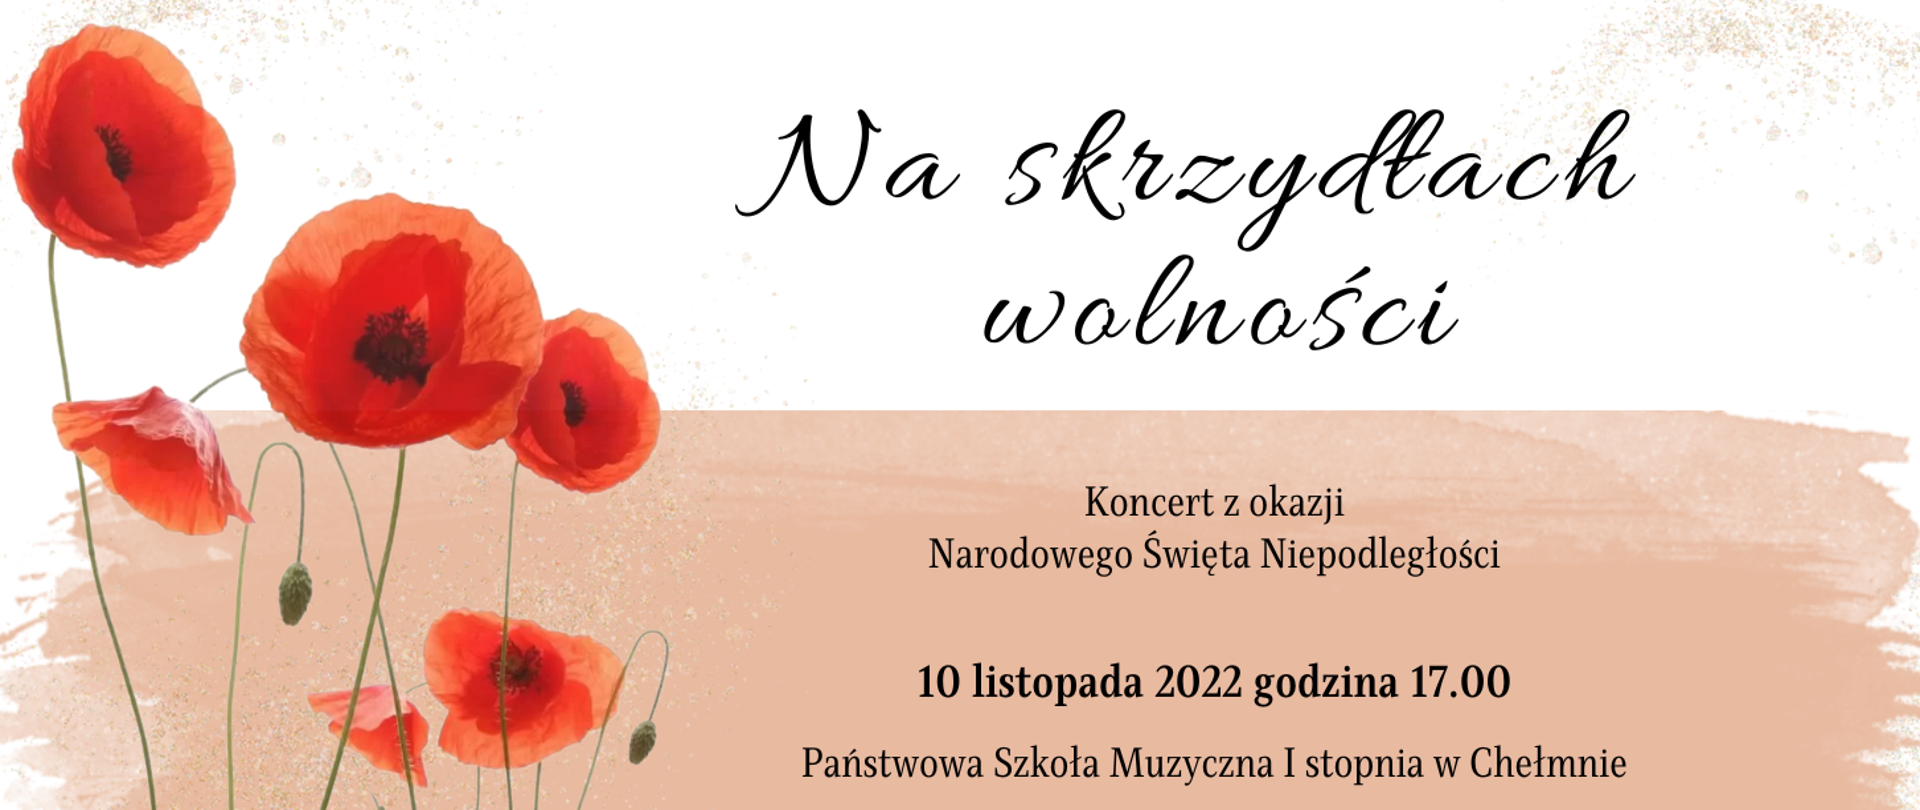 Grafika. Po lewej stronie maki polne, po prawej napis "Na skrzydłach wolności" oraz informacja o koncercie. Całość na dwukolorowym tle symbolizującym flagę Polski.